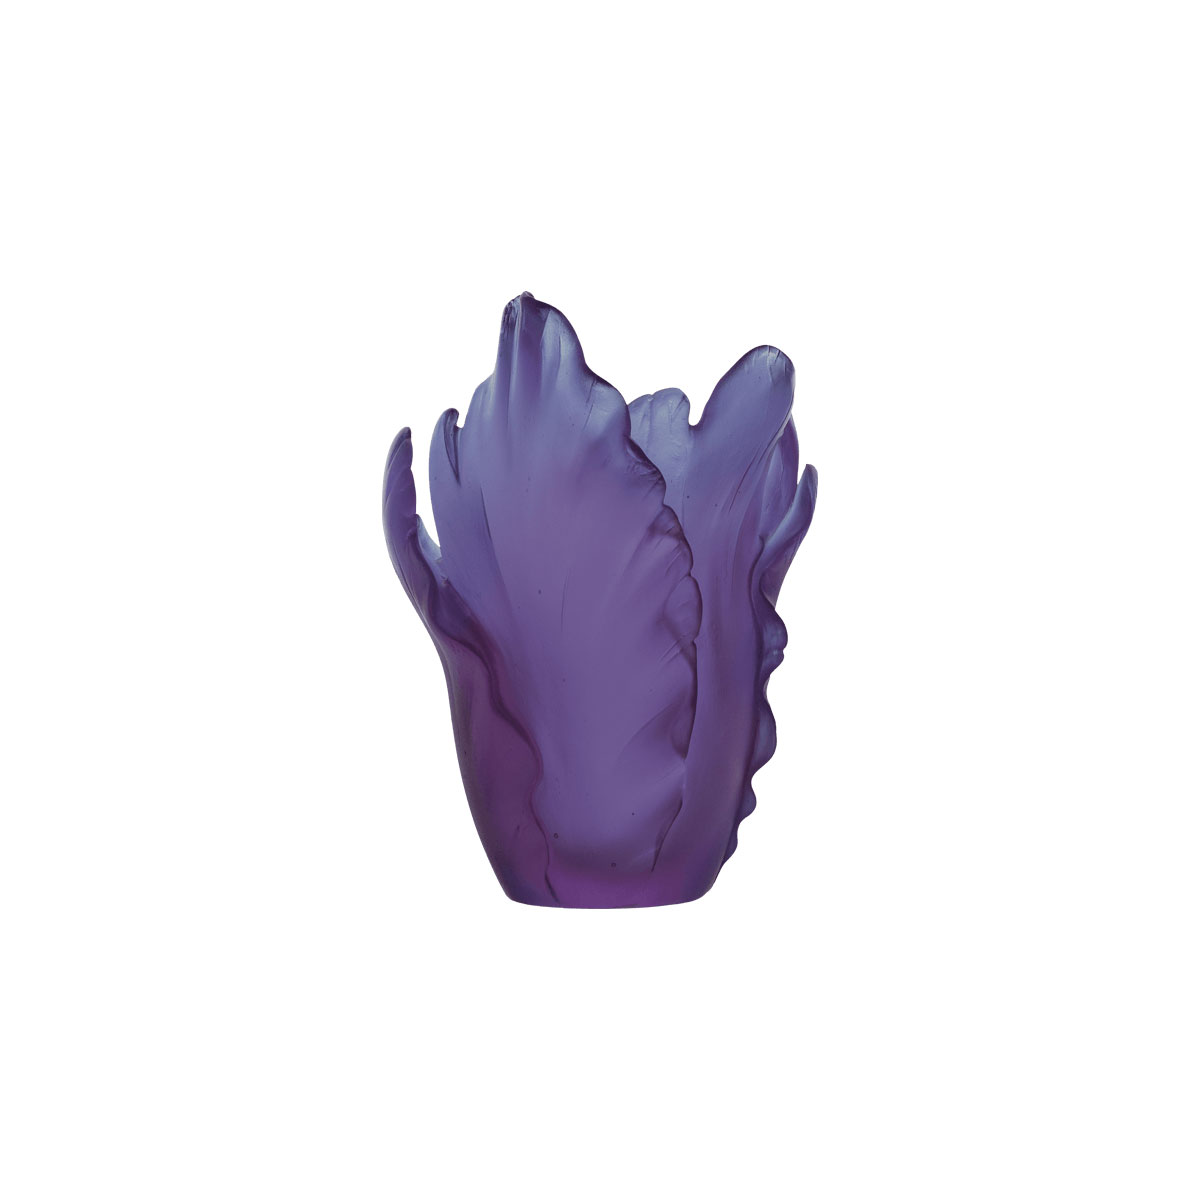 Daum 6.7" Tulip Vase in Ultraviolet